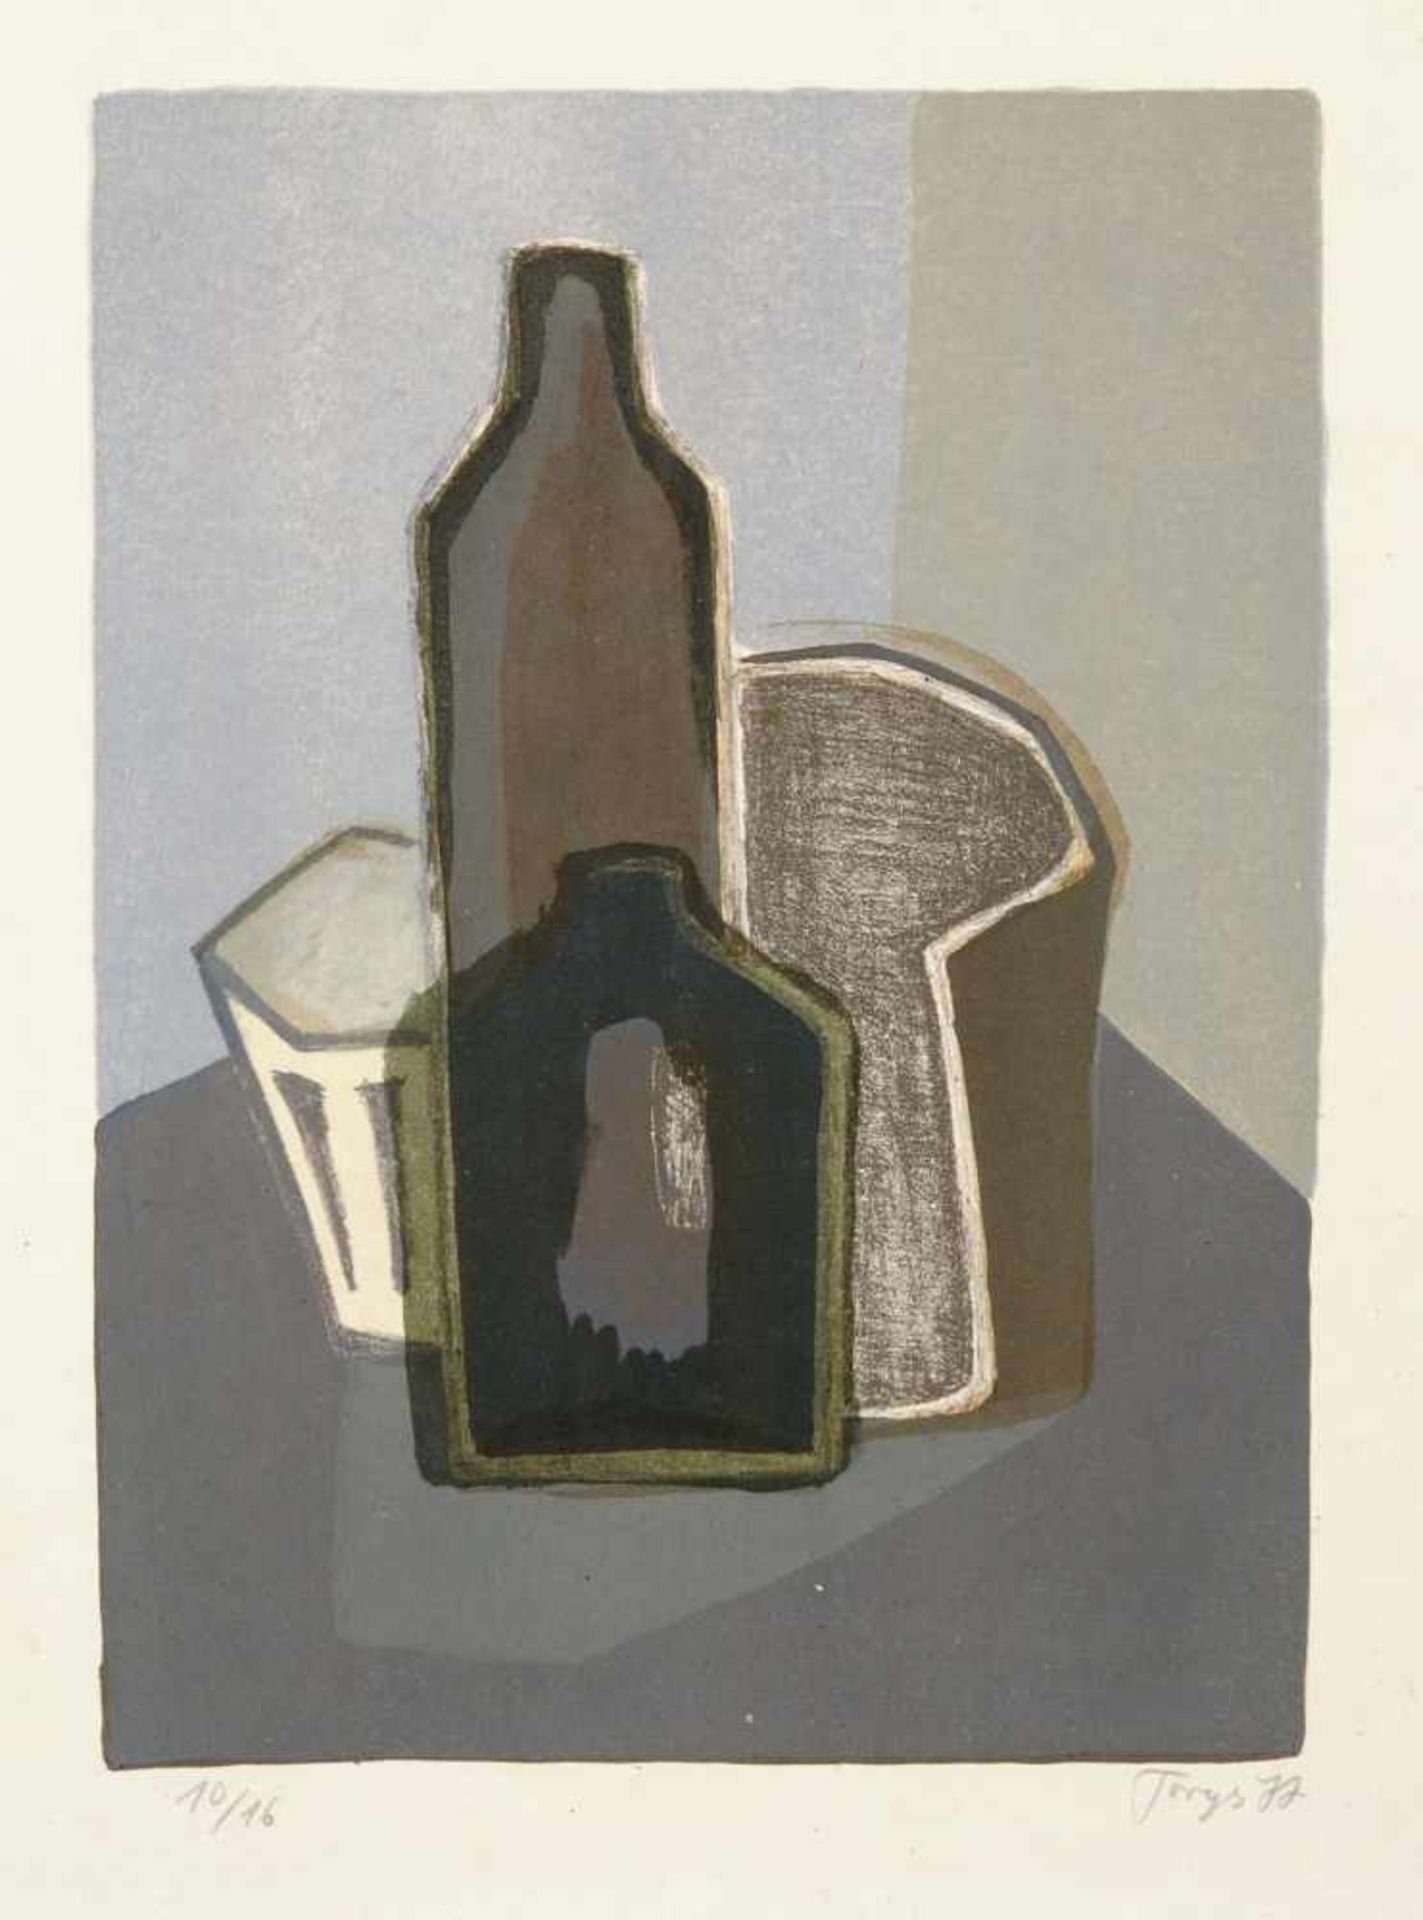 Günther Torges, Stillleben mit Flasche. 1977. Farblithografie auf kräftigem Papier. Unterhalb der